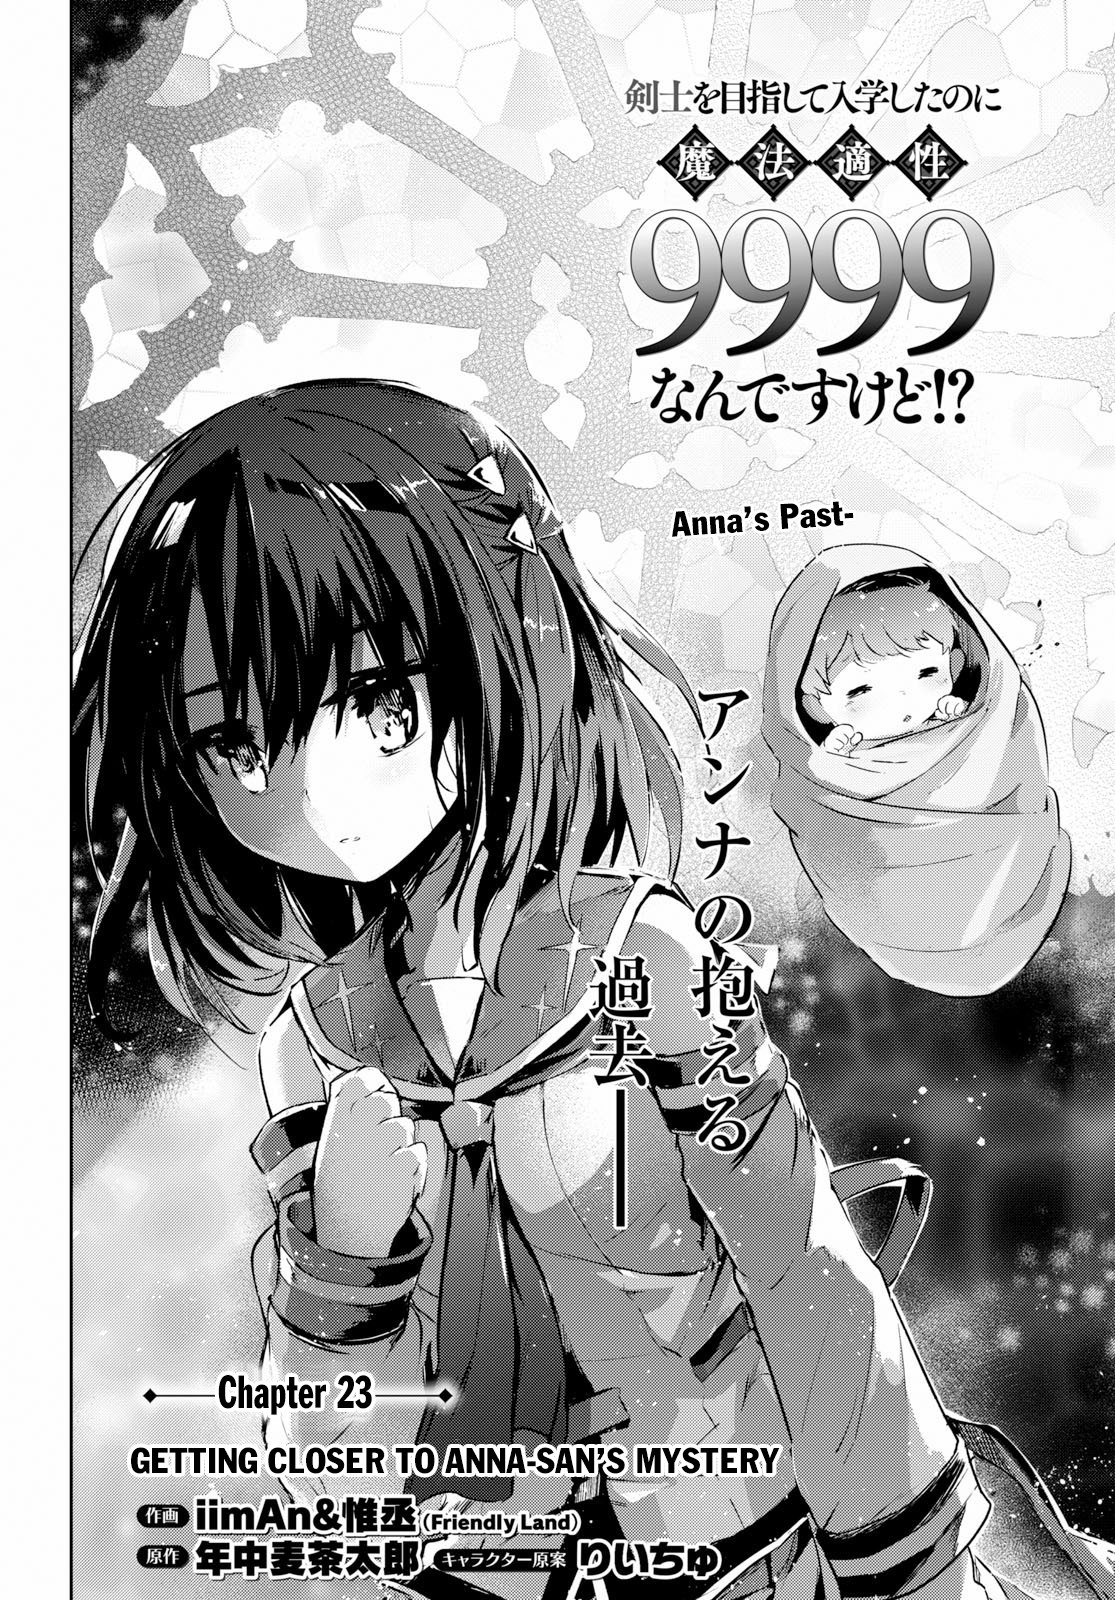 Kenshi O Mezashite Nyūgaku Shitanoni Mahō Tekisei 9999 Nandesukedo!? Chapter 23: Getting Closer To Anna-San's Mystery - Picture 3